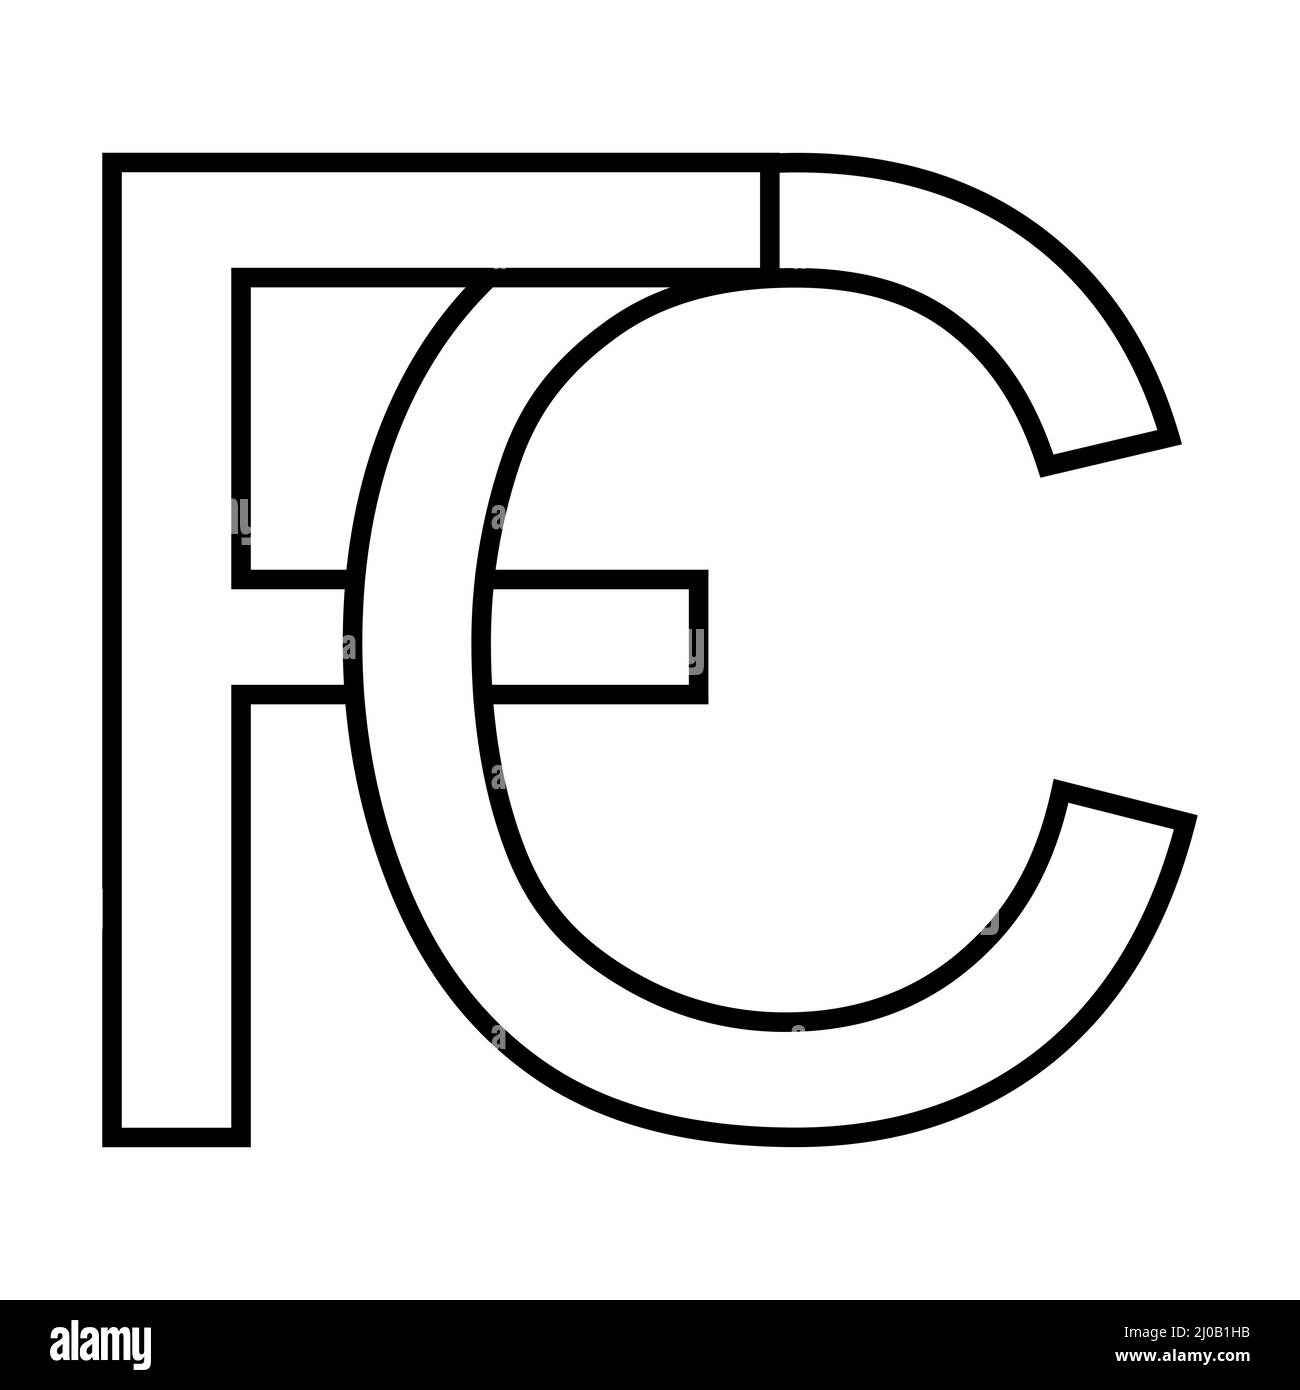 Logo-Zeichen, fc cf-Symbol nft fc Zeilensprungbuchstaben f c Stock Vektor